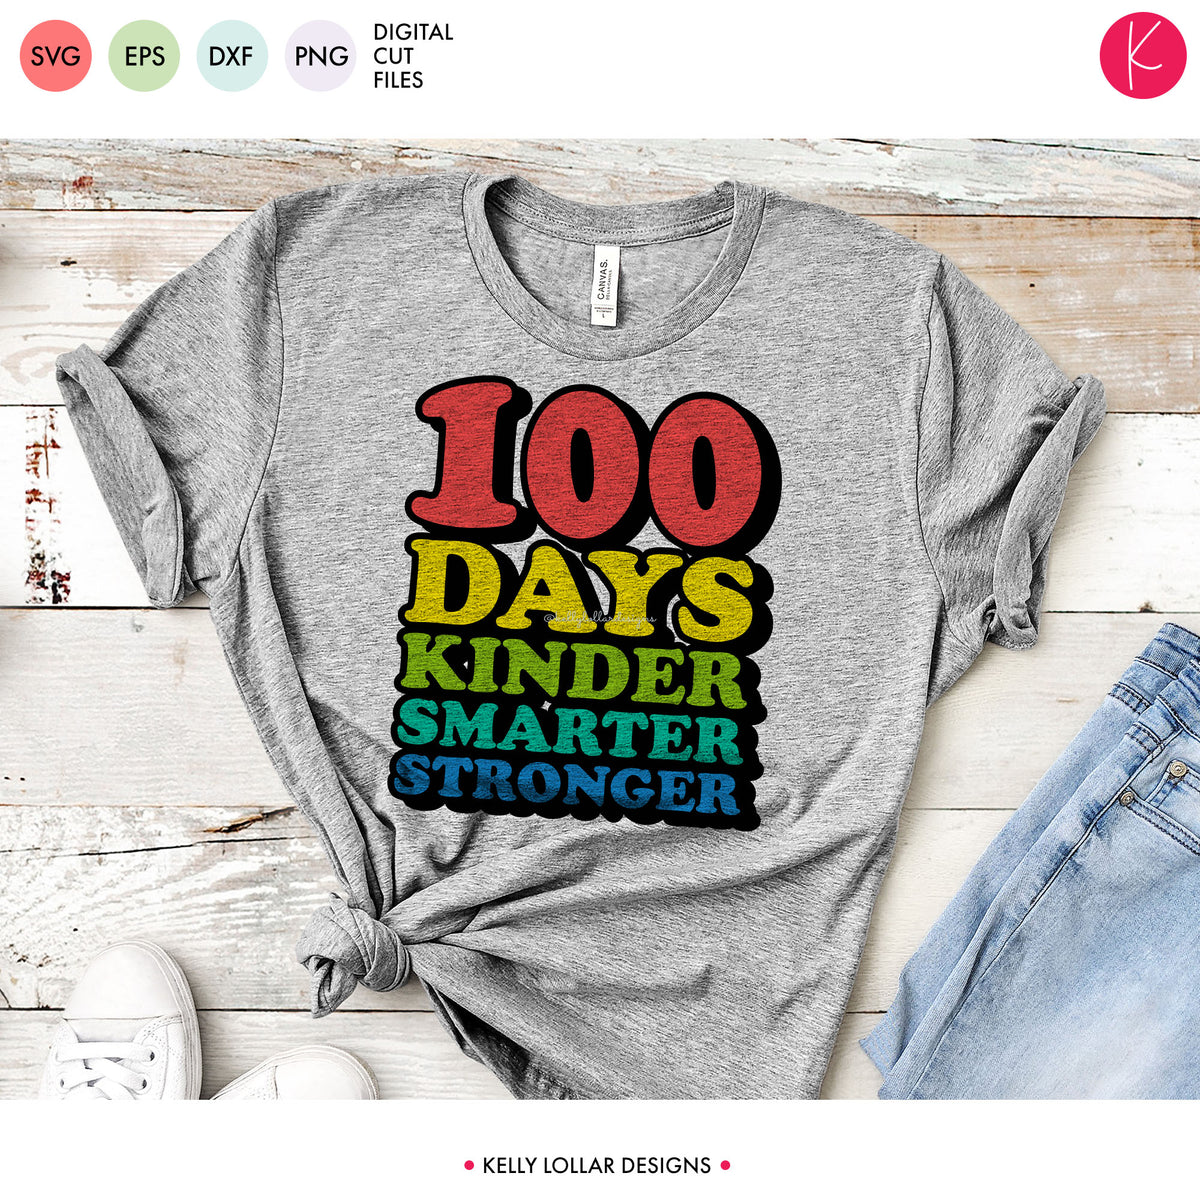 100 Days Kinder Smarter Stronger | SVG DXF EPS PNG Cut Files